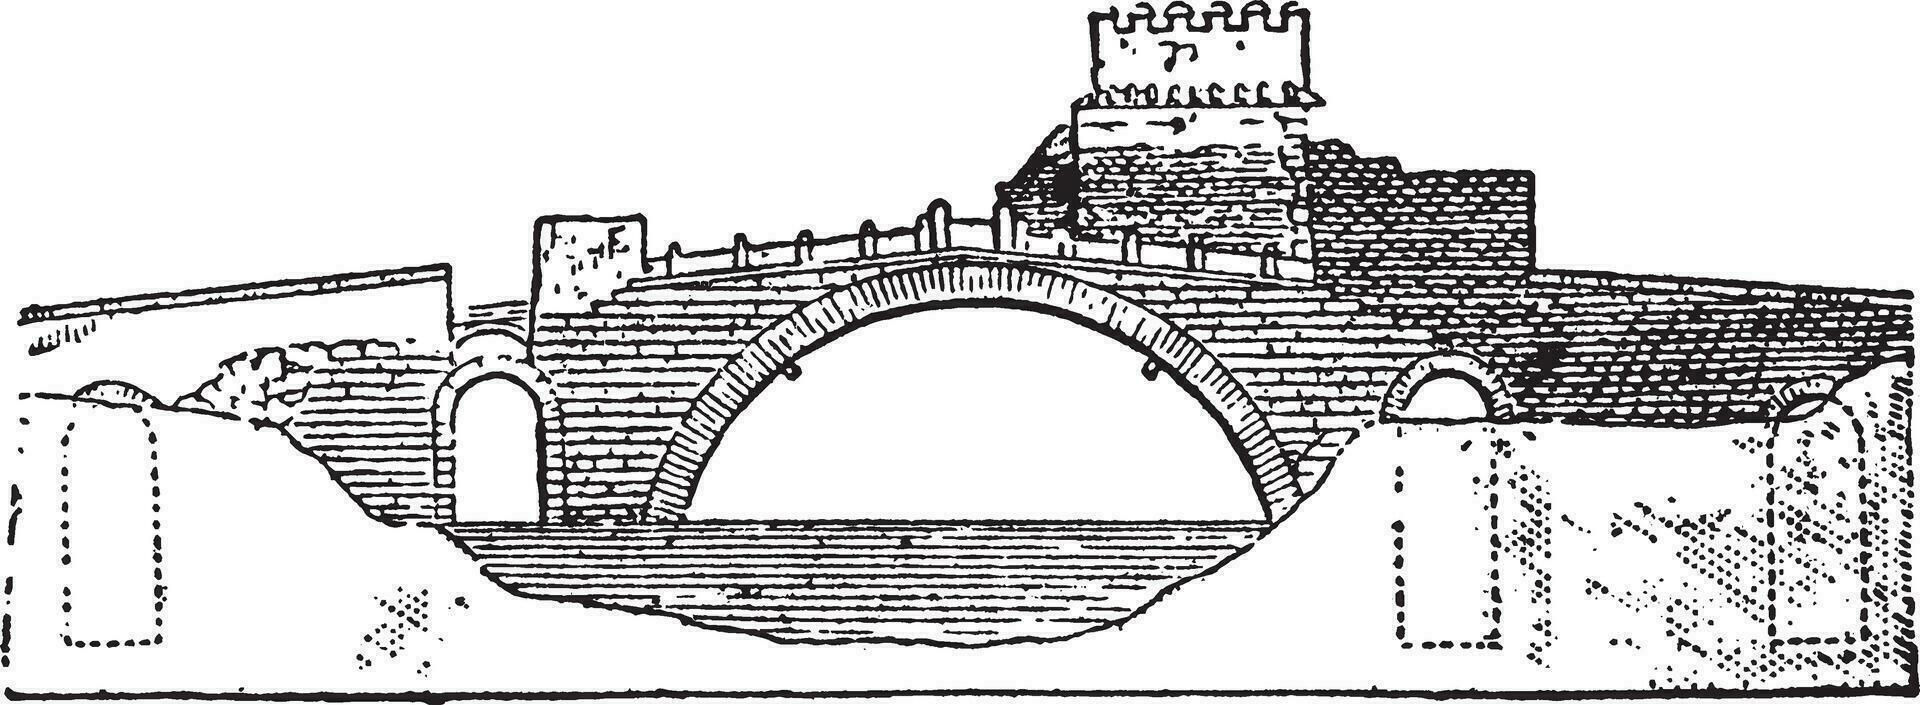 ponte salaire pont, ancien illustration. vecteur